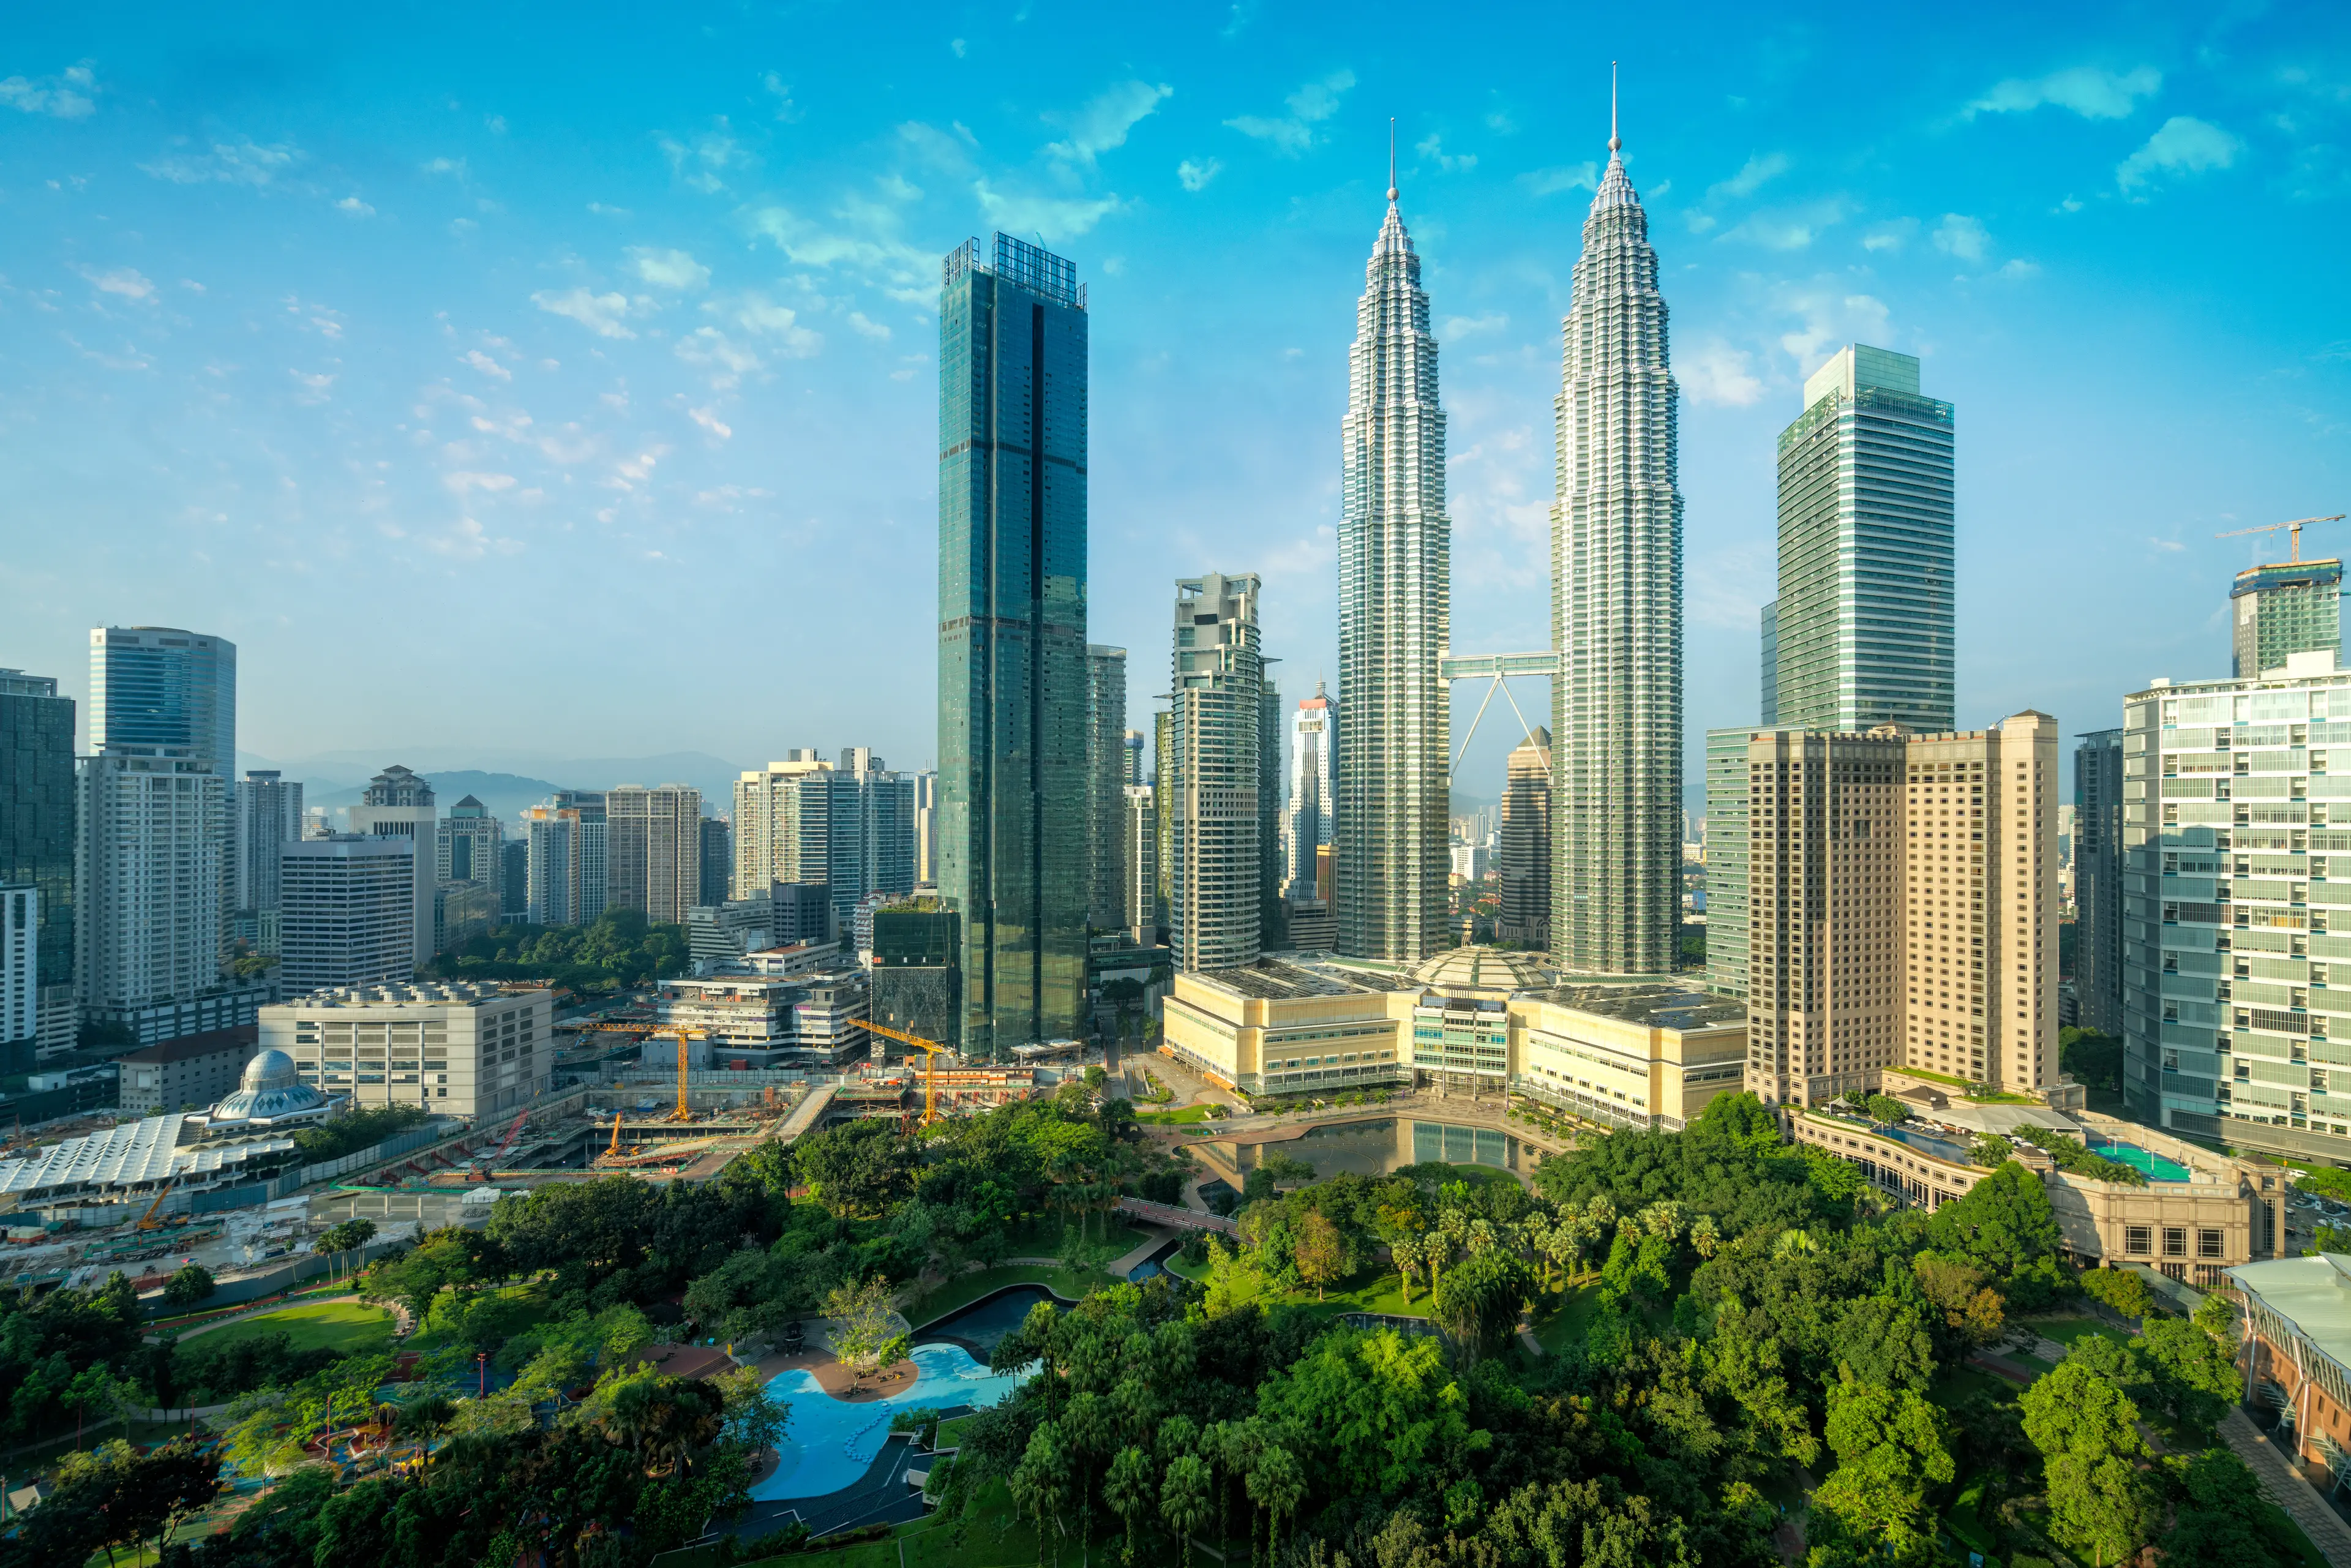 City skyline featuring Petronas Towers